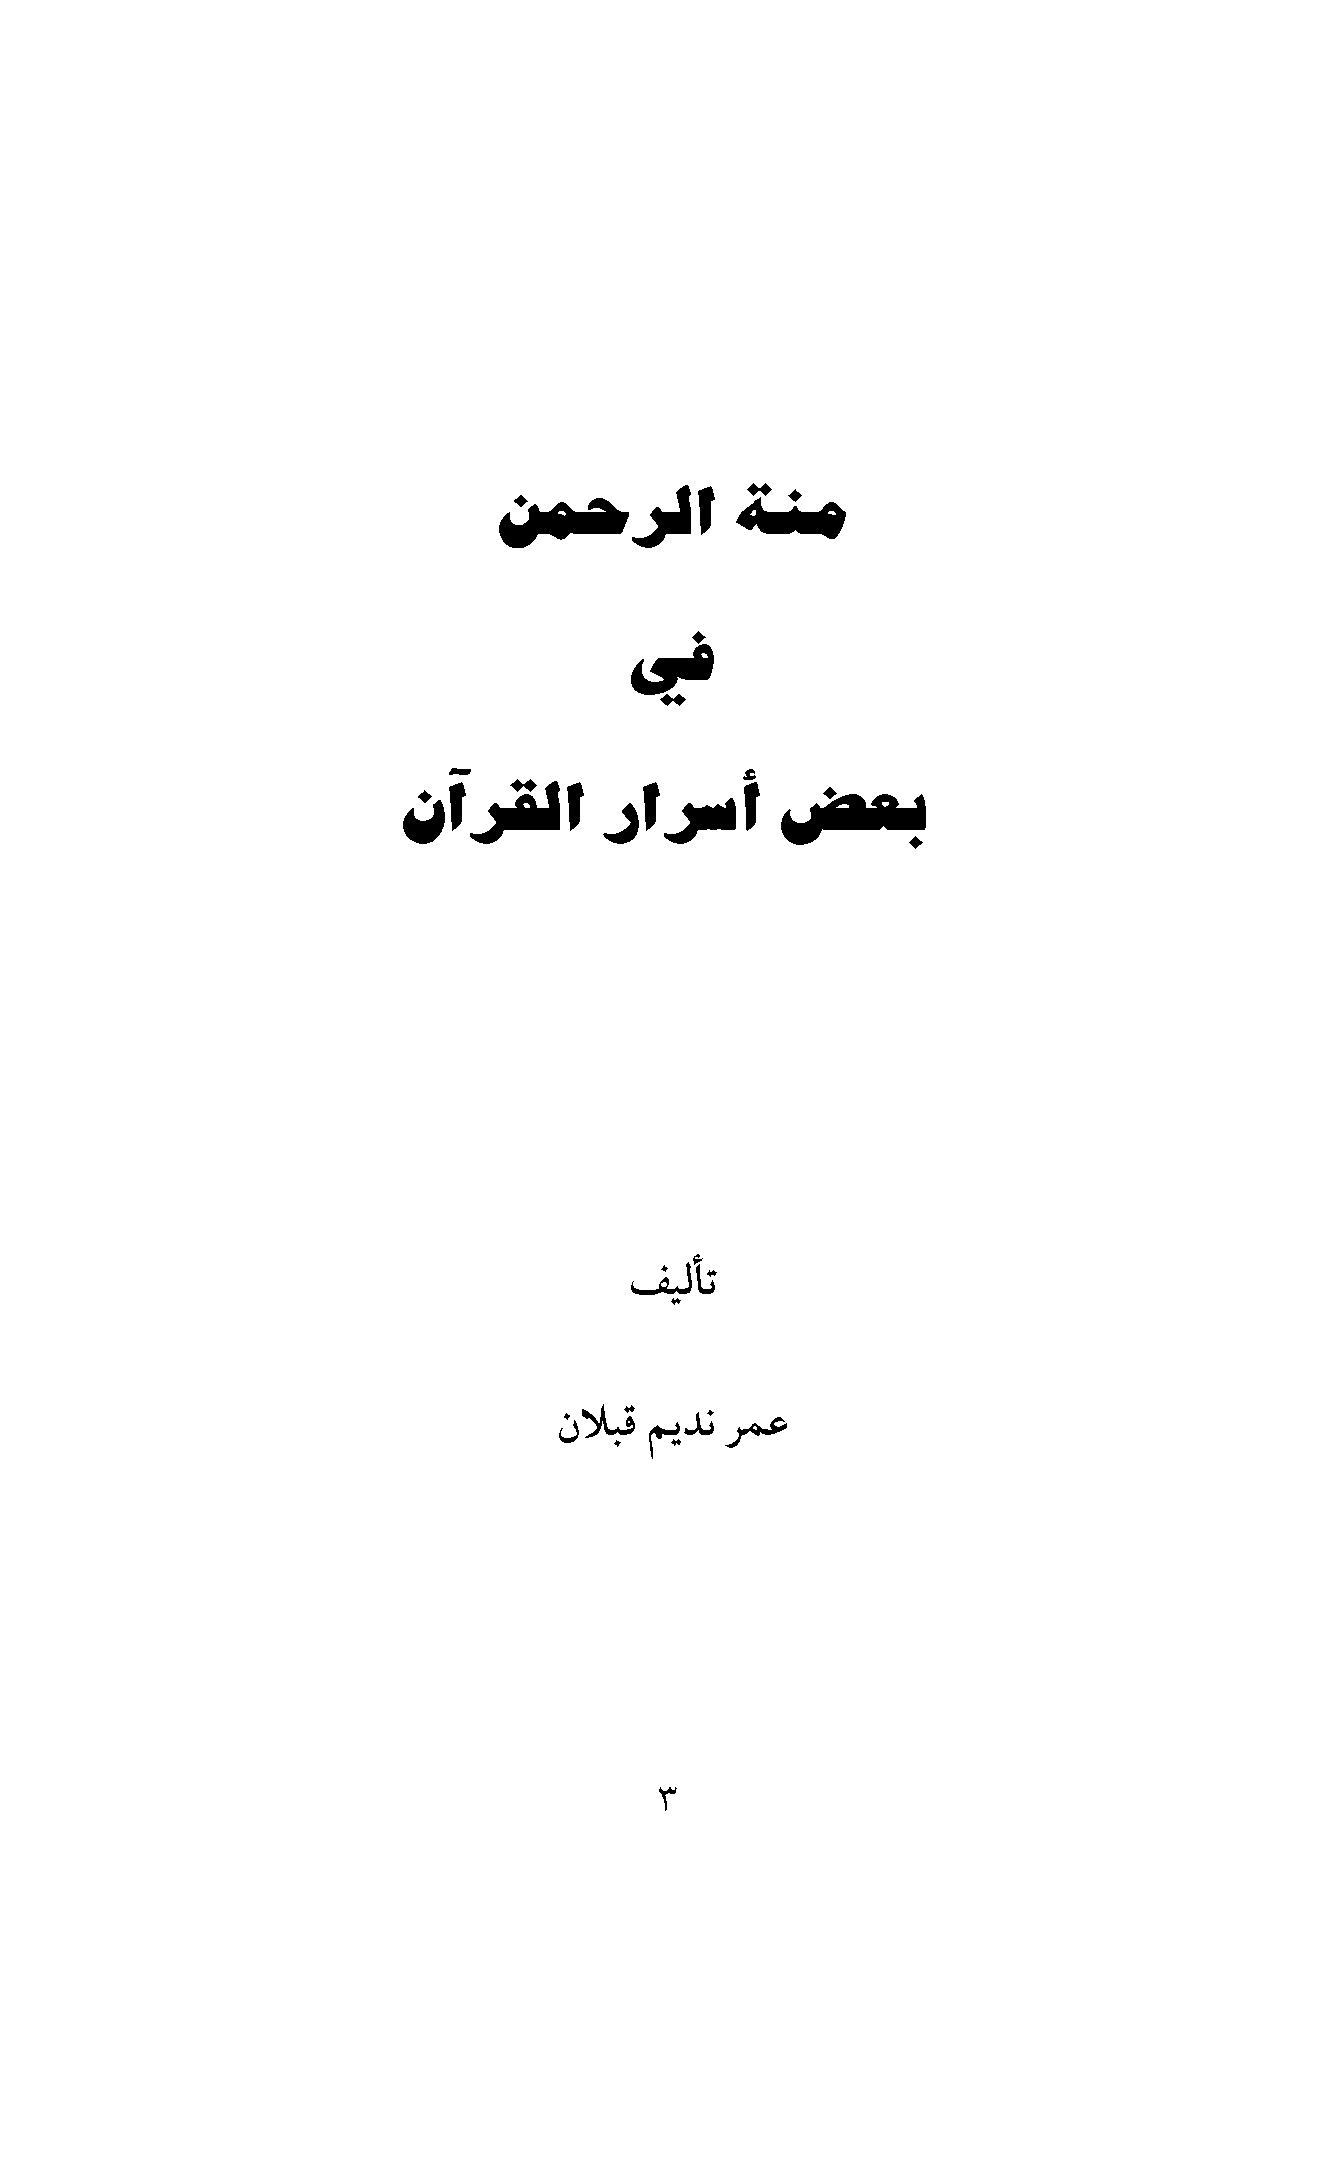 تحميل كتاب منة الرحمن في بعض أسرار القرآن للمؤلف: الشيخ عمر نديم قبلان